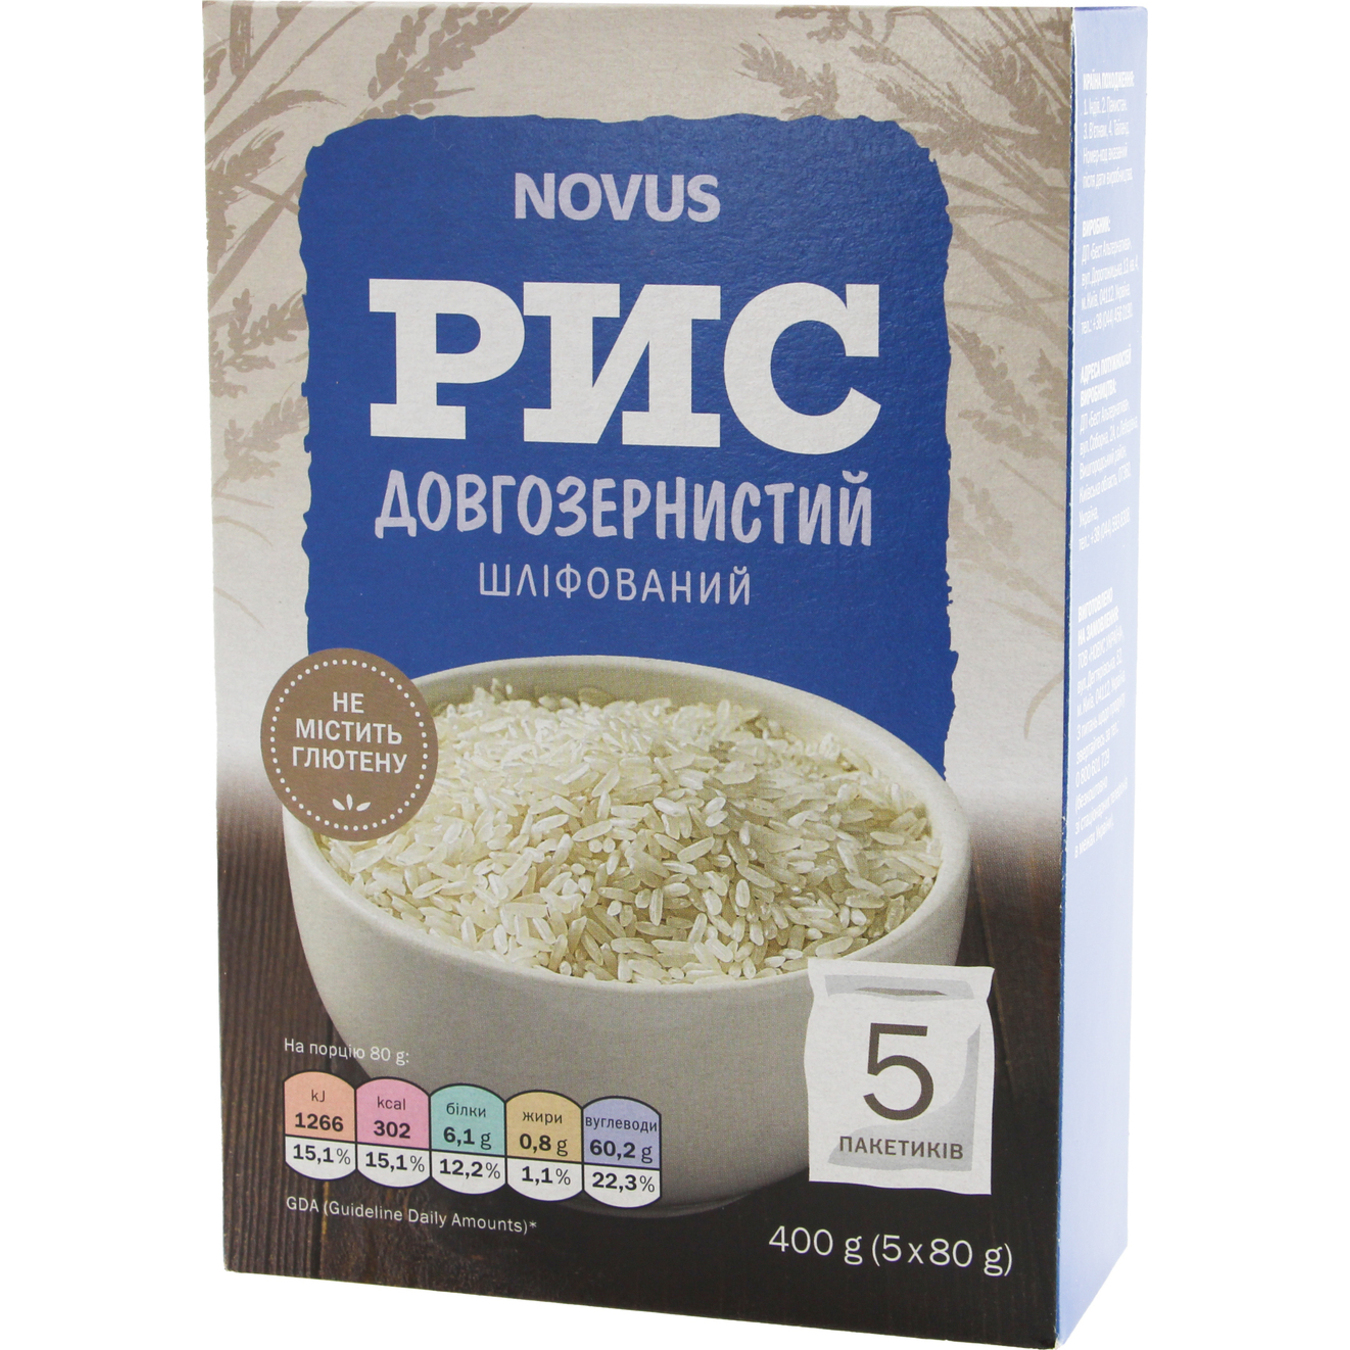 Novus Polished Long Grain Rice in Bags 5x80g 2